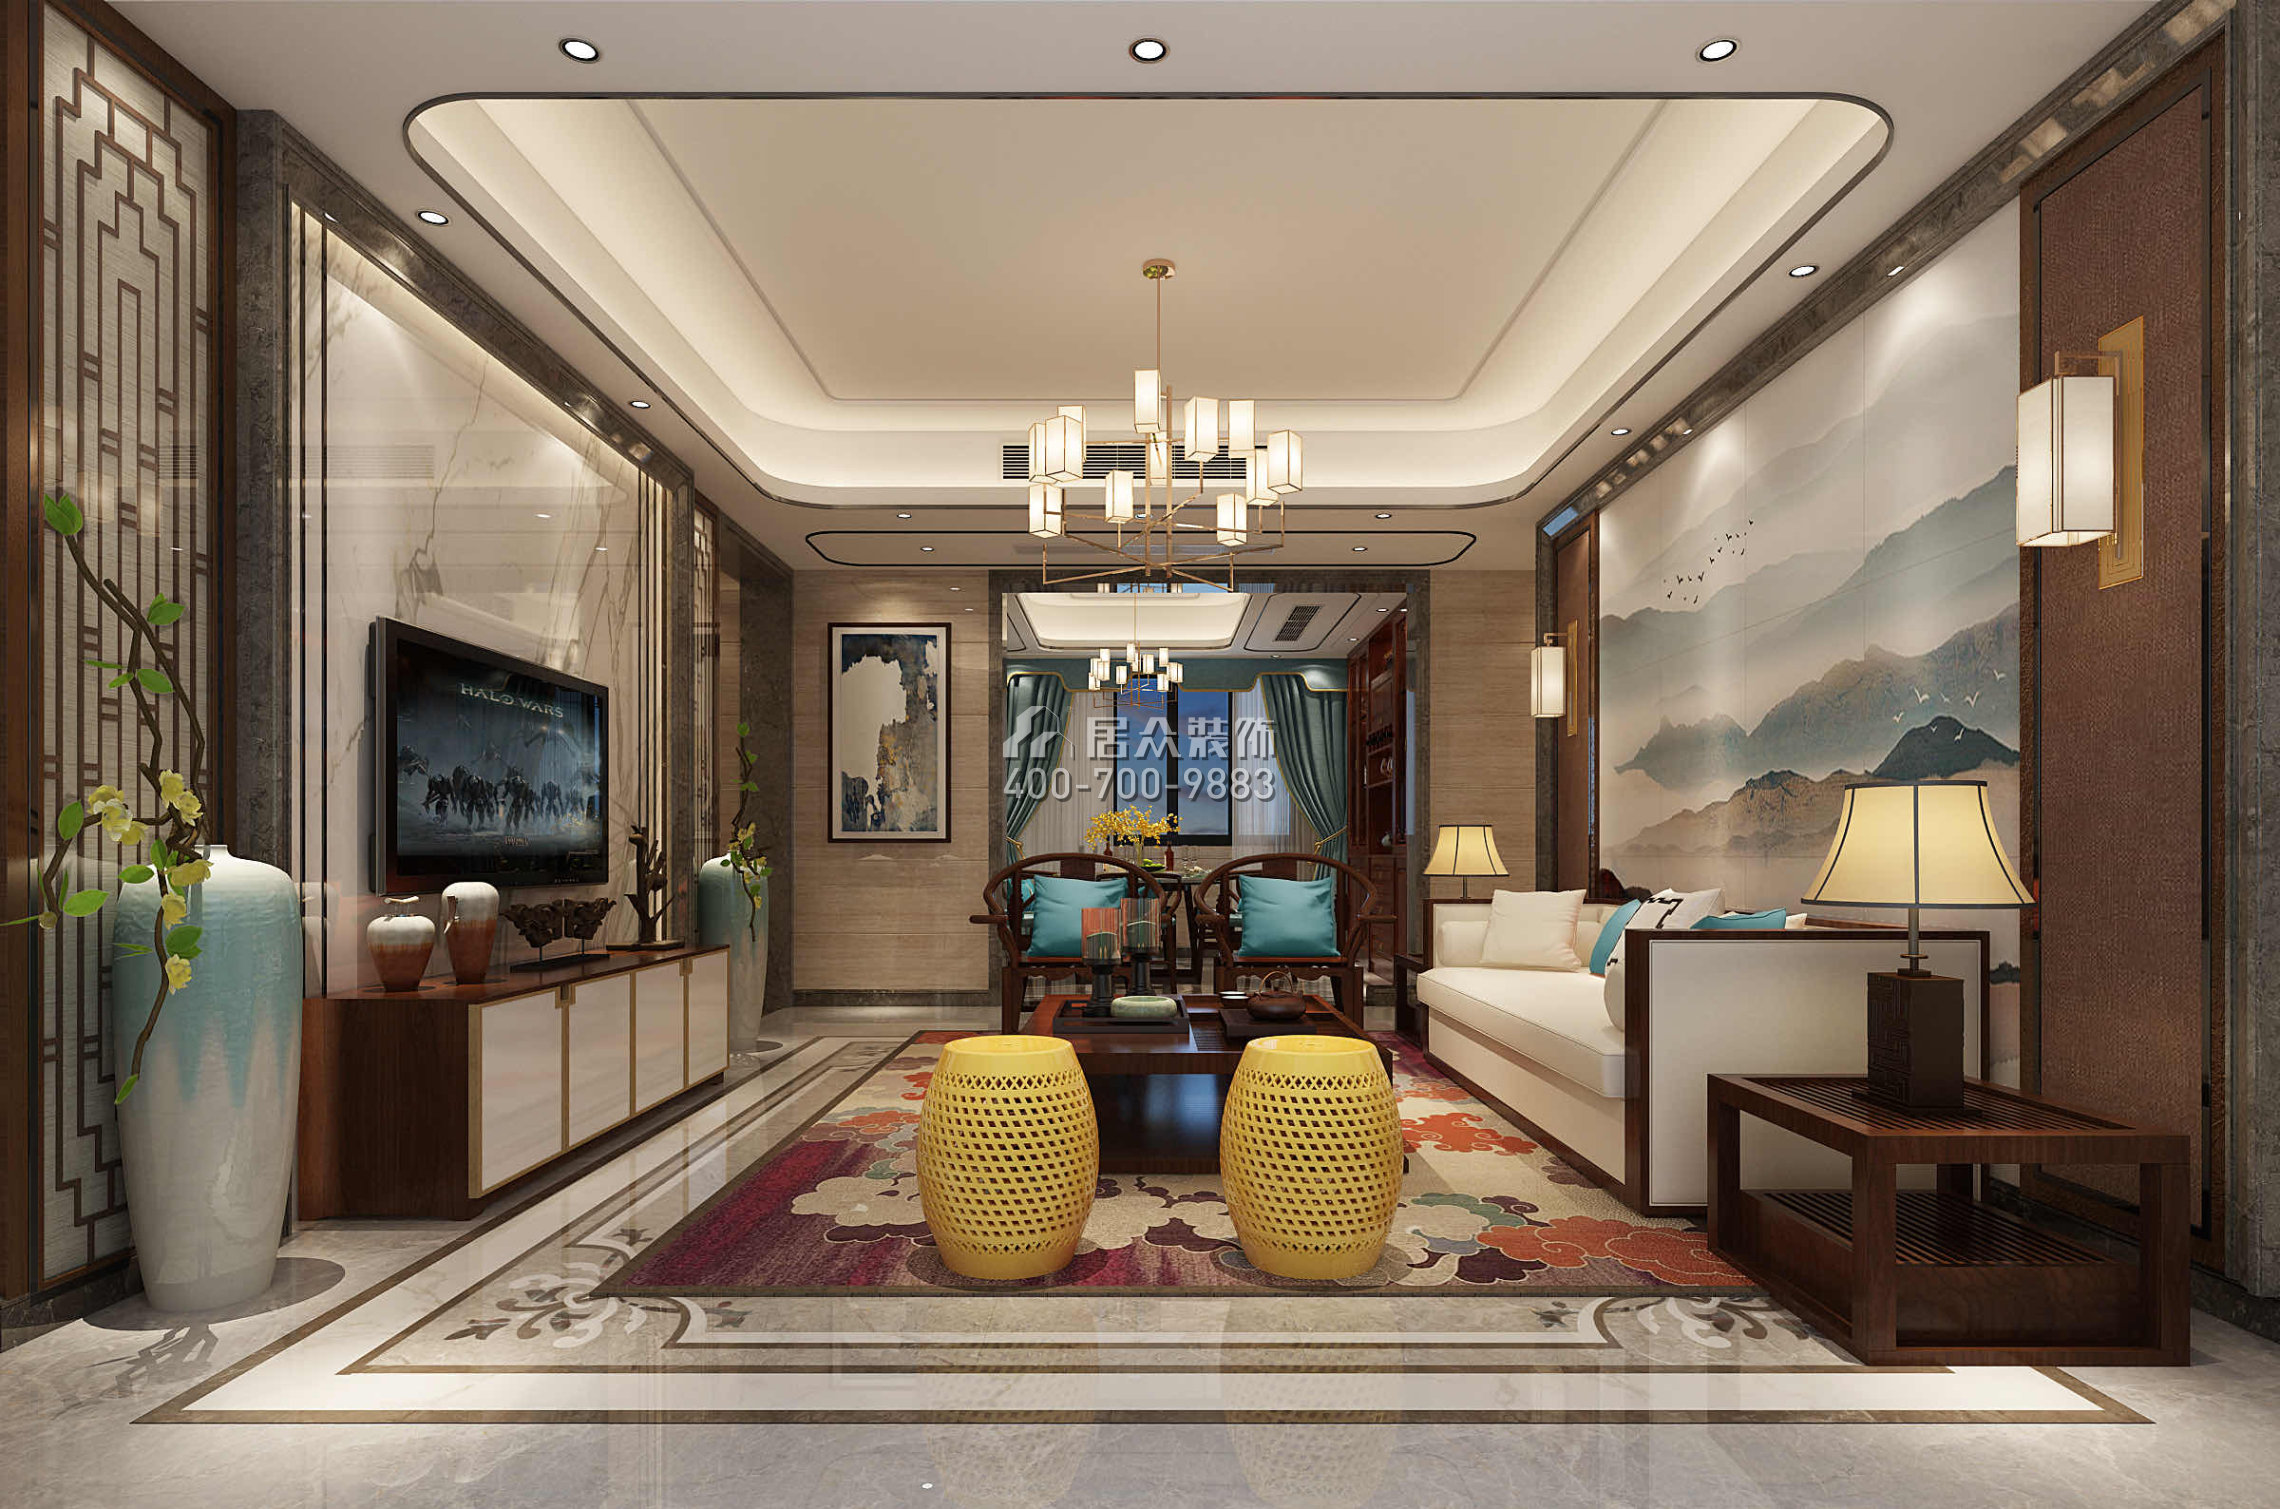 嘉華星際灣180平方米中式風格平層戶型客廳裝修效果圖